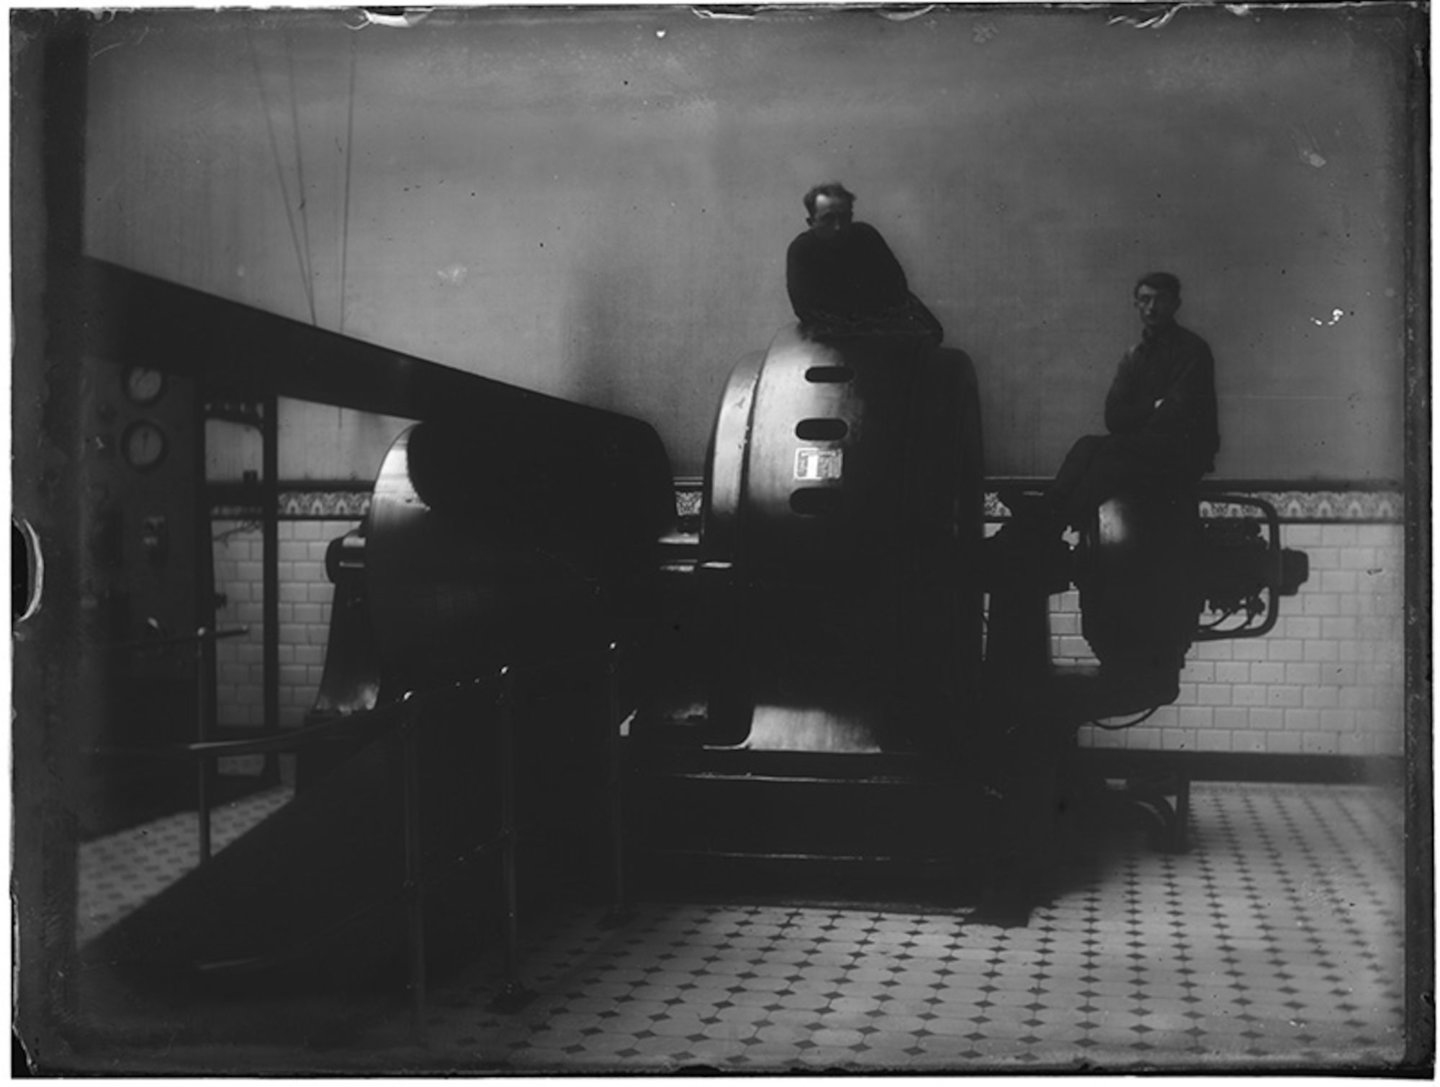 Binnenzicht machinekamer met poserende mannen zittend op een alternator